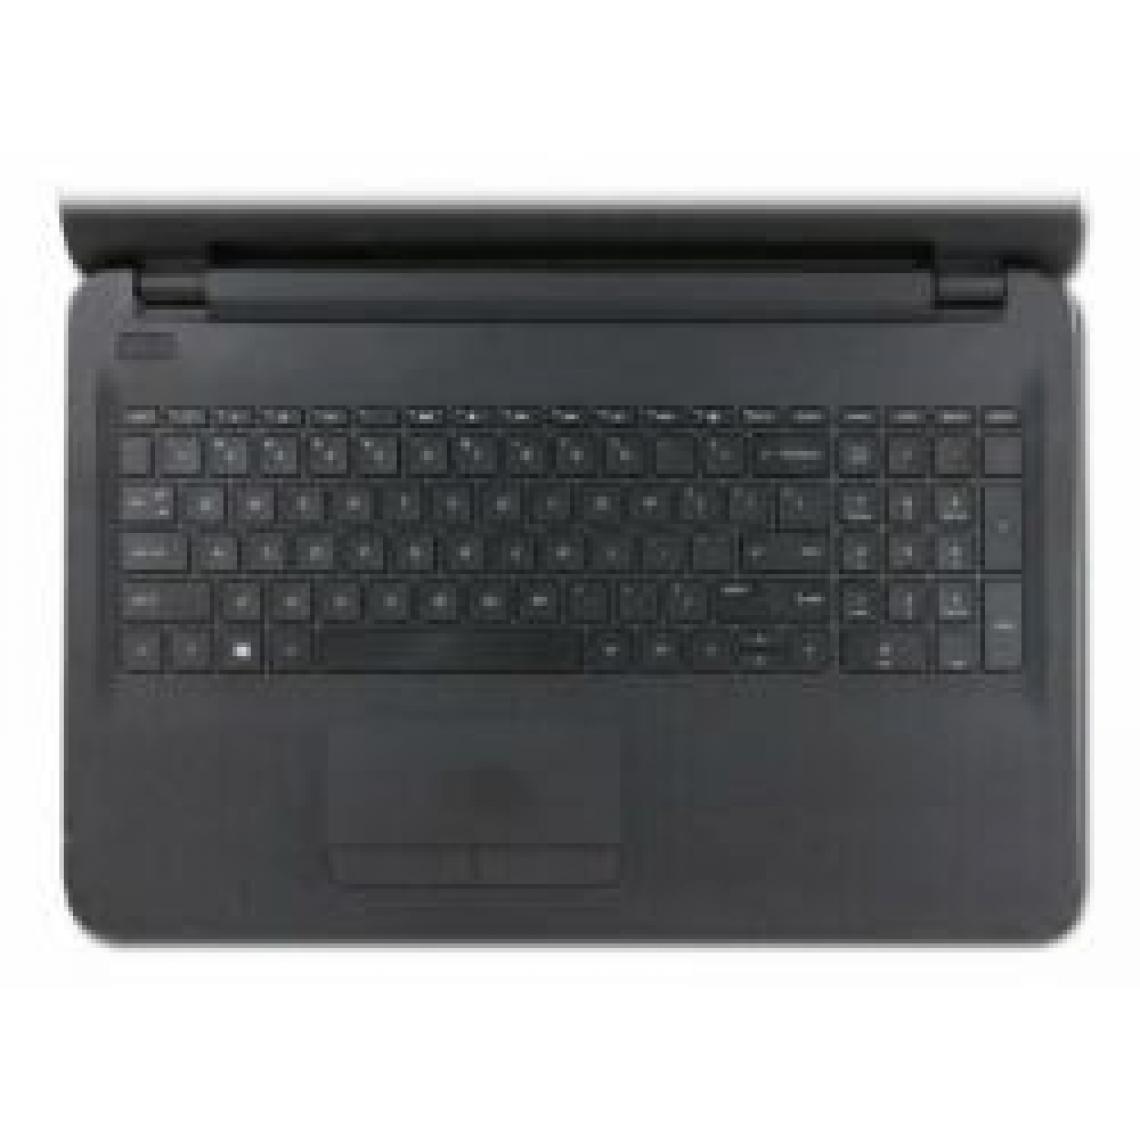 Inconnu - HP Top Cover & Keyboard (FR) Couverture - Composants de Notebook supplémentaires (Couverture, Français, 250 G5) - Clavier